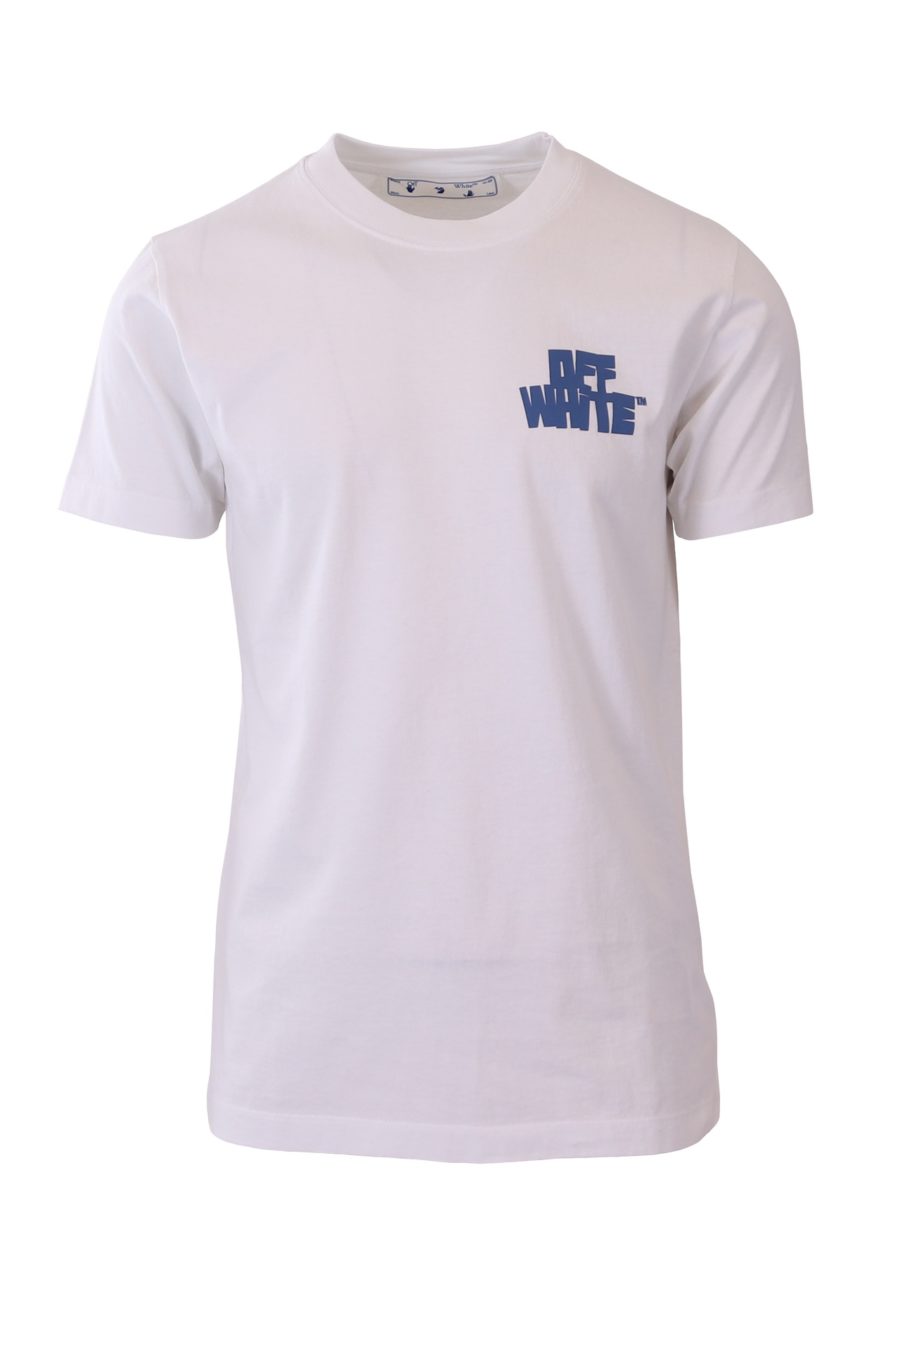 T-shirt Off-White blanc imprimé bleu - 0505ba4dc0632876082a1700eb5faed2a08eabec